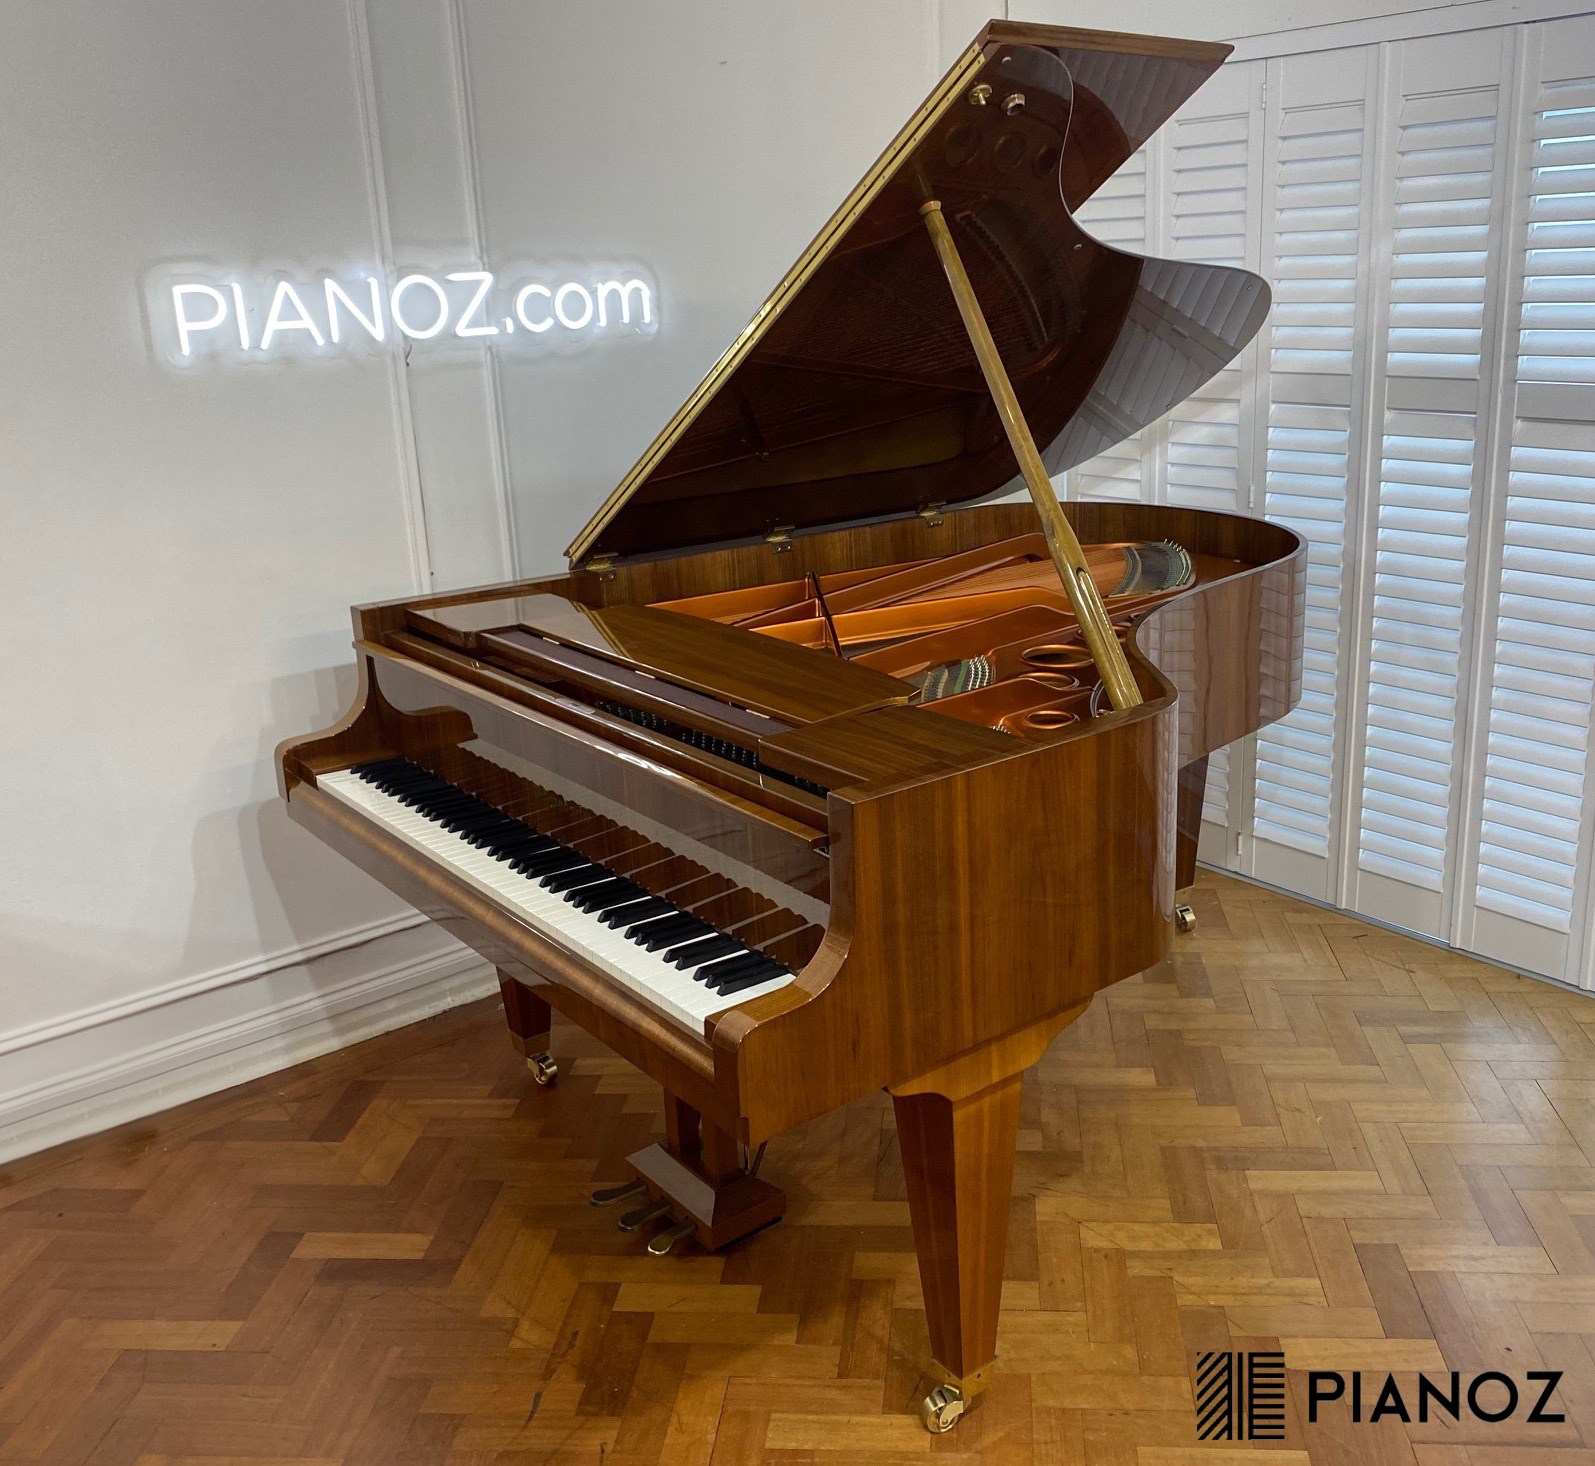 Bosendorfer 200 Grand Piano piano for sale in UK